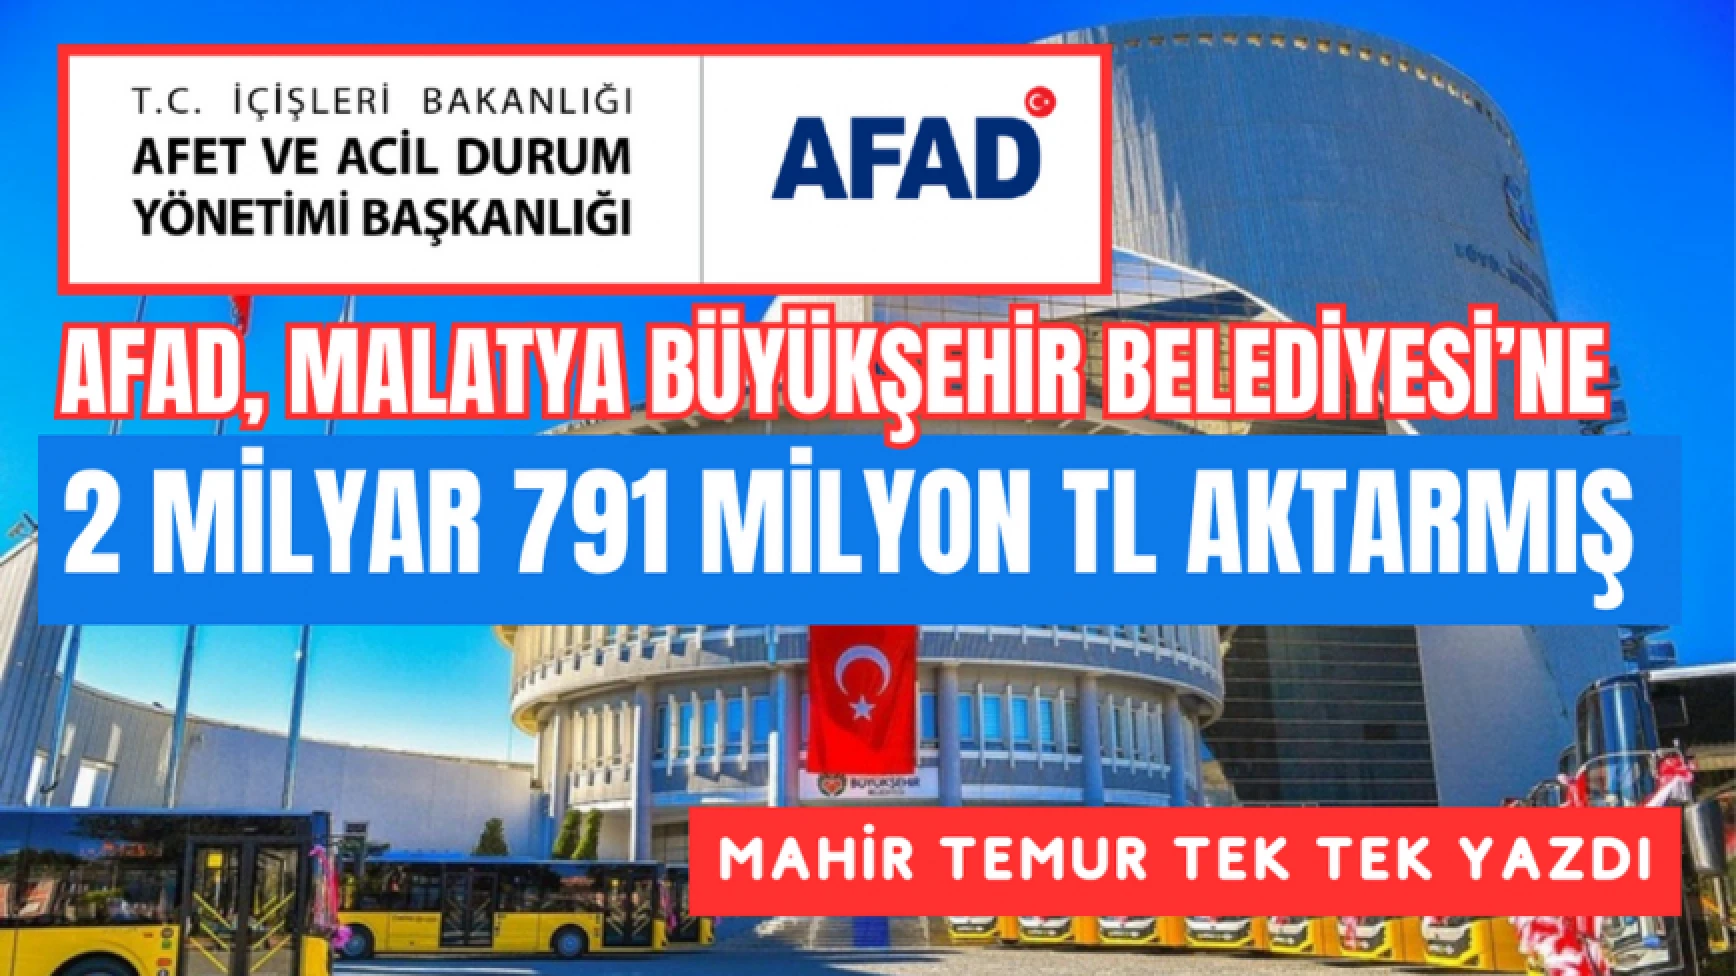 AFAD, Malatya Büyükşehir Belediyesi’ne 2 milyar 791 milyon TL aktarmış!